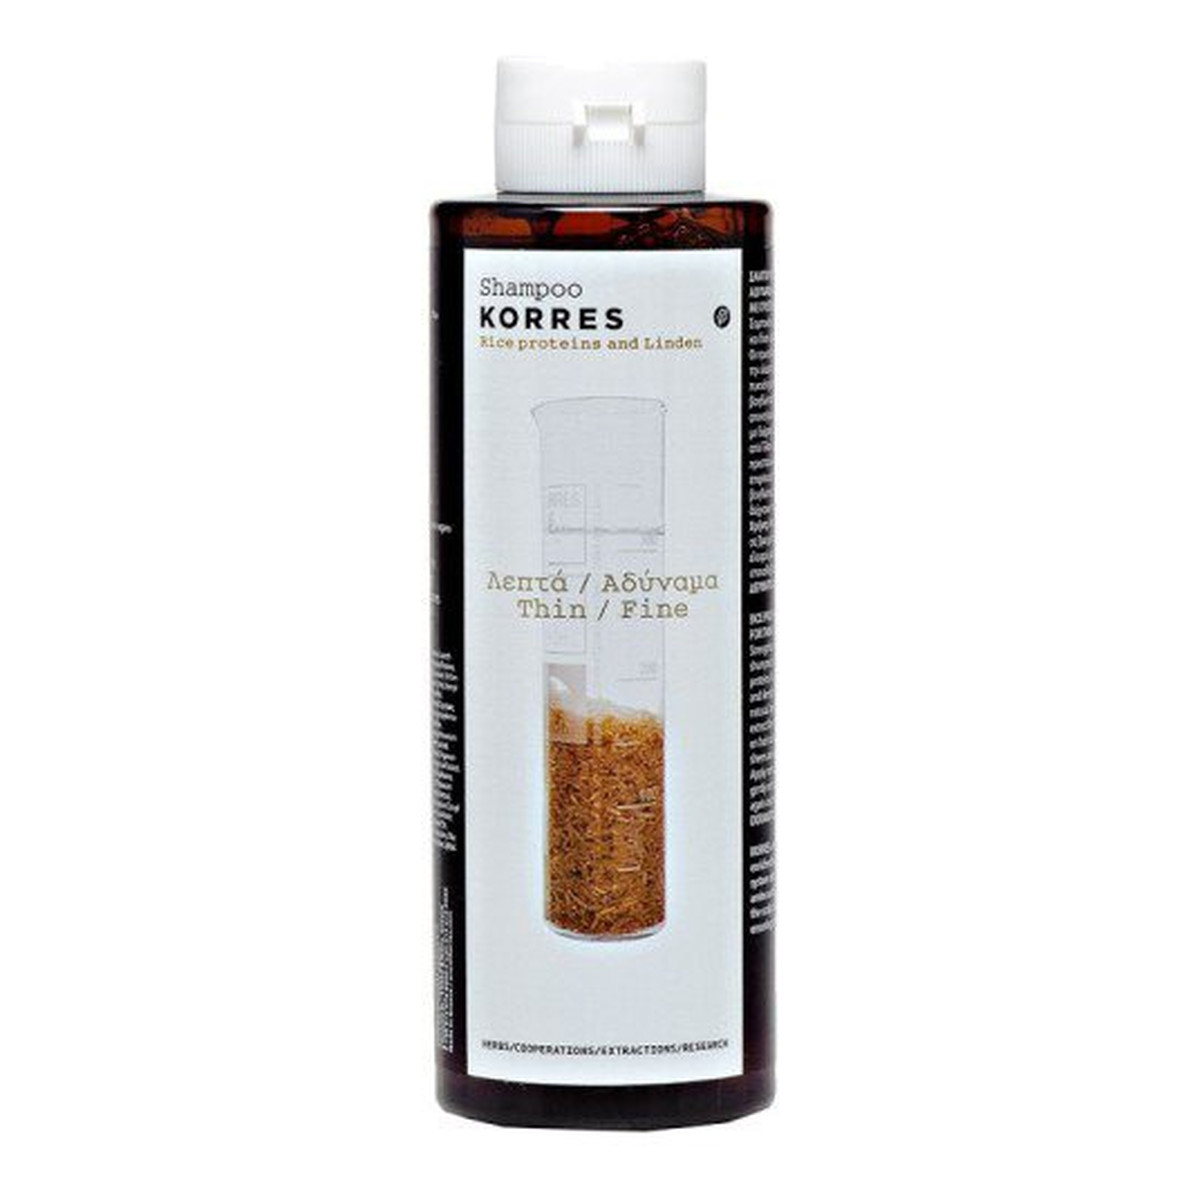 Korres Shampoo For Thin/Fine Hair With Rice Proteins And Linden Szampon z proteinami ryżu i wyciągiem z lipy do włosów cienkich i wrażliwych 250ml